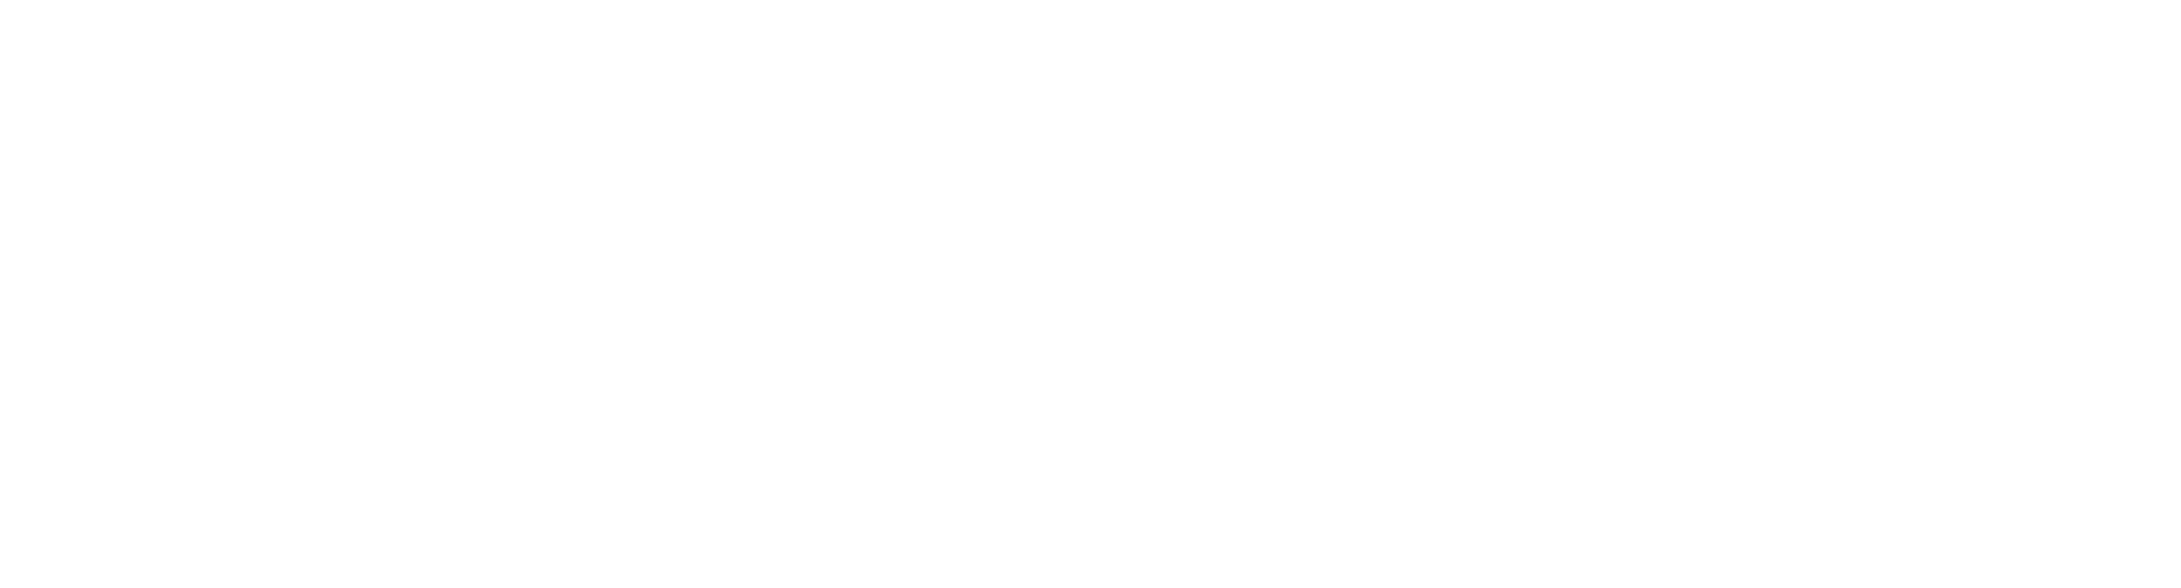 Total Card Visa Logo White